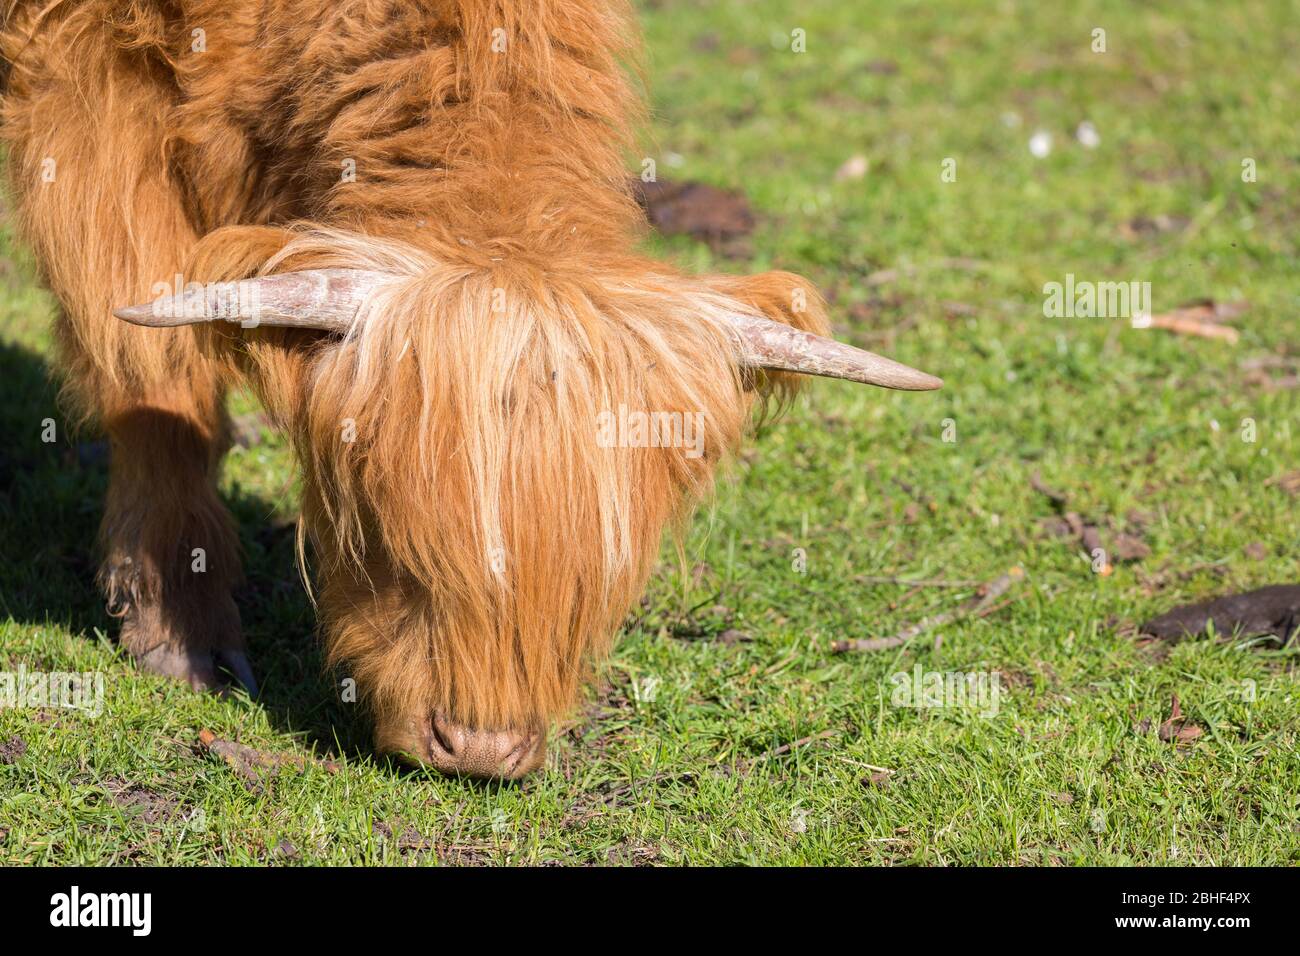 Nahaufnahme des Kopfes eines weidenden Kalbes (Scottish Highland Breed). Milch und Rindfleisch. Konzept für die Viehzucht, ökologische Landwirtschaft. Stockfoto